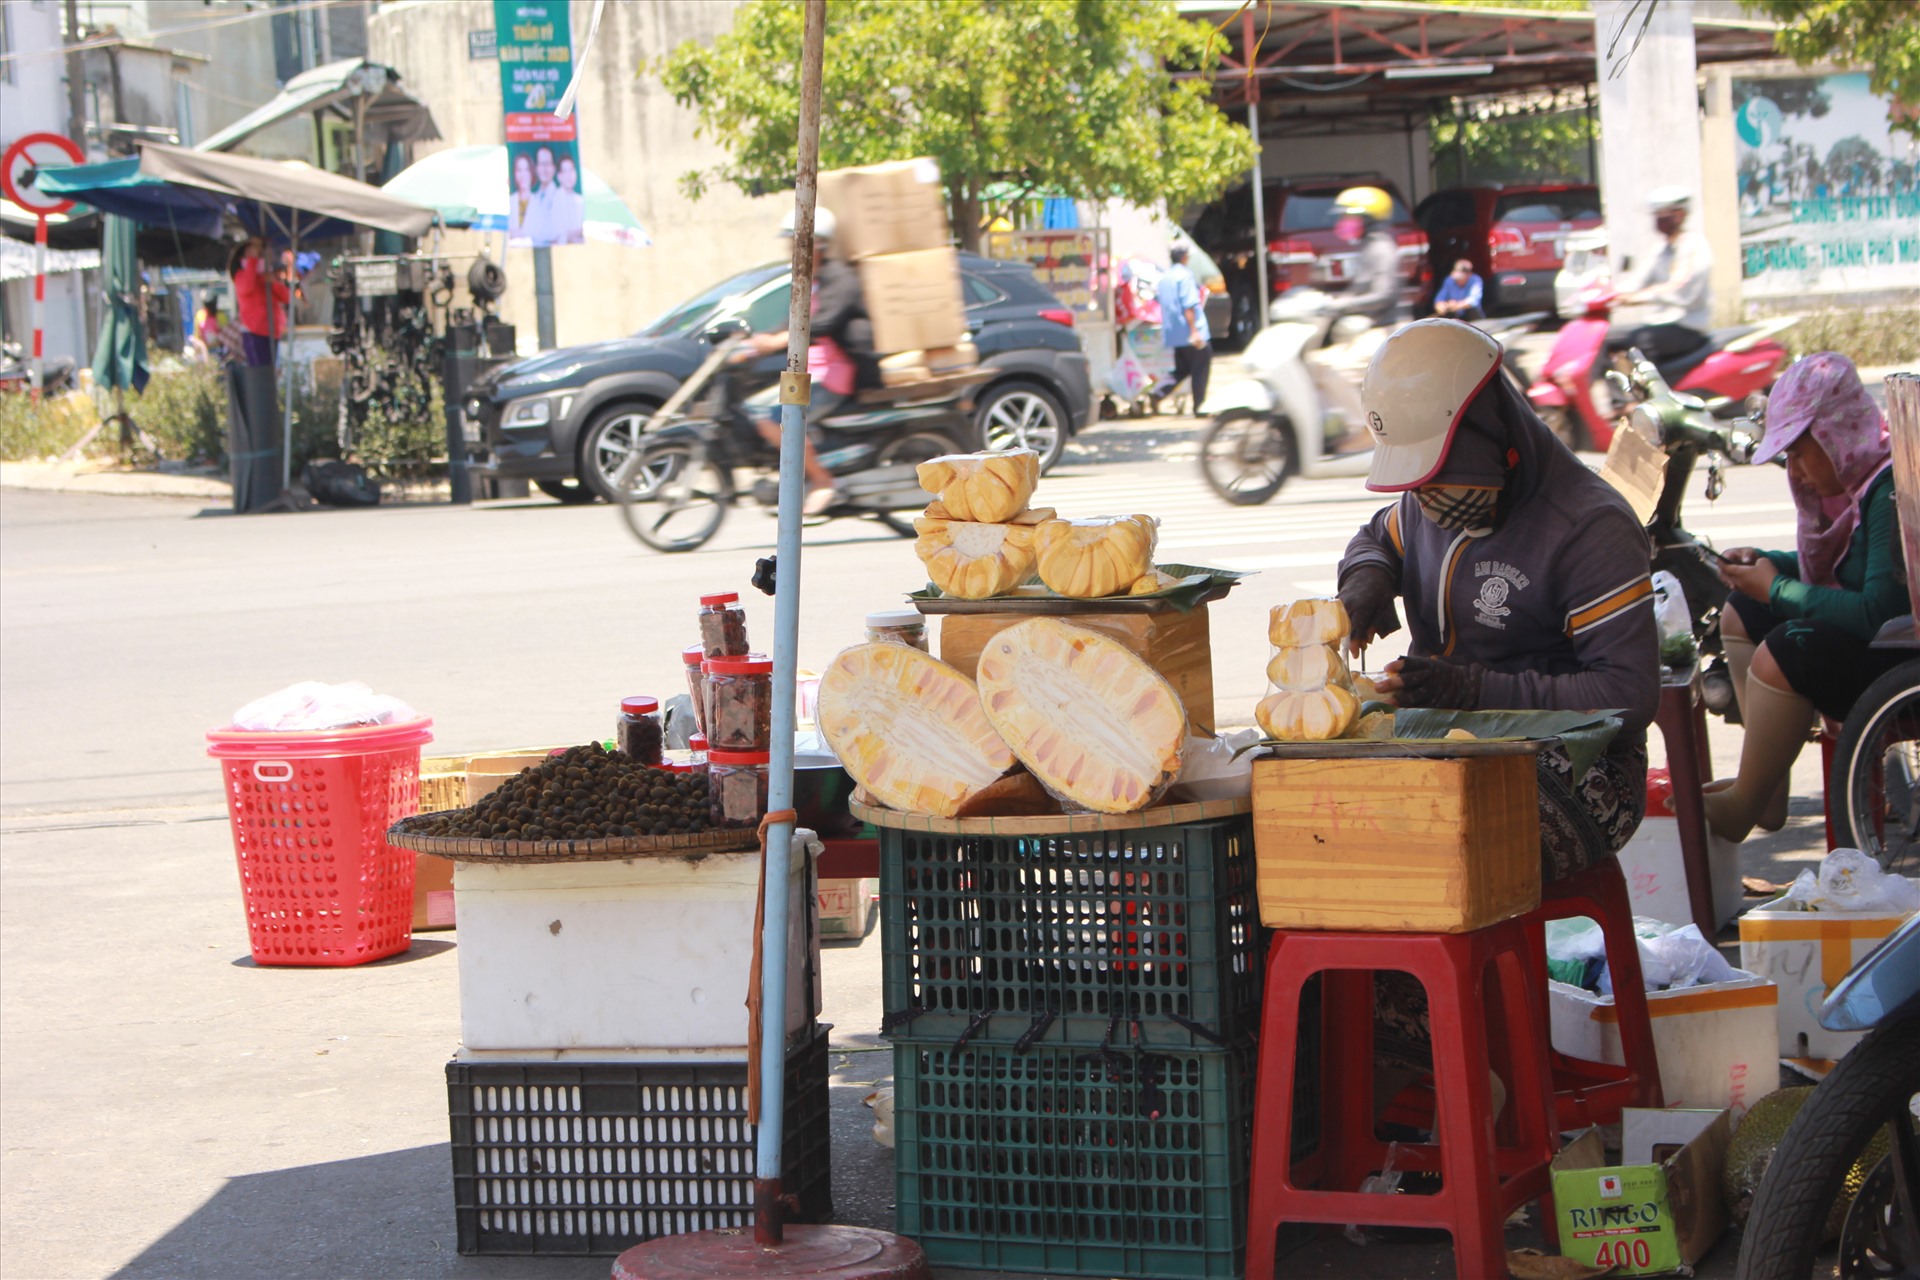 Cô Nguyễn Thị Hoa (tiểu thương bán bánh mứt tại chợ Hàn) chia sẻ: “So với thời điểm dịch phải đóng cửa hàng thì bây giờ đã được buôn bán. Nhưng mở bán vậy chứ khách cũng không có mấy”.